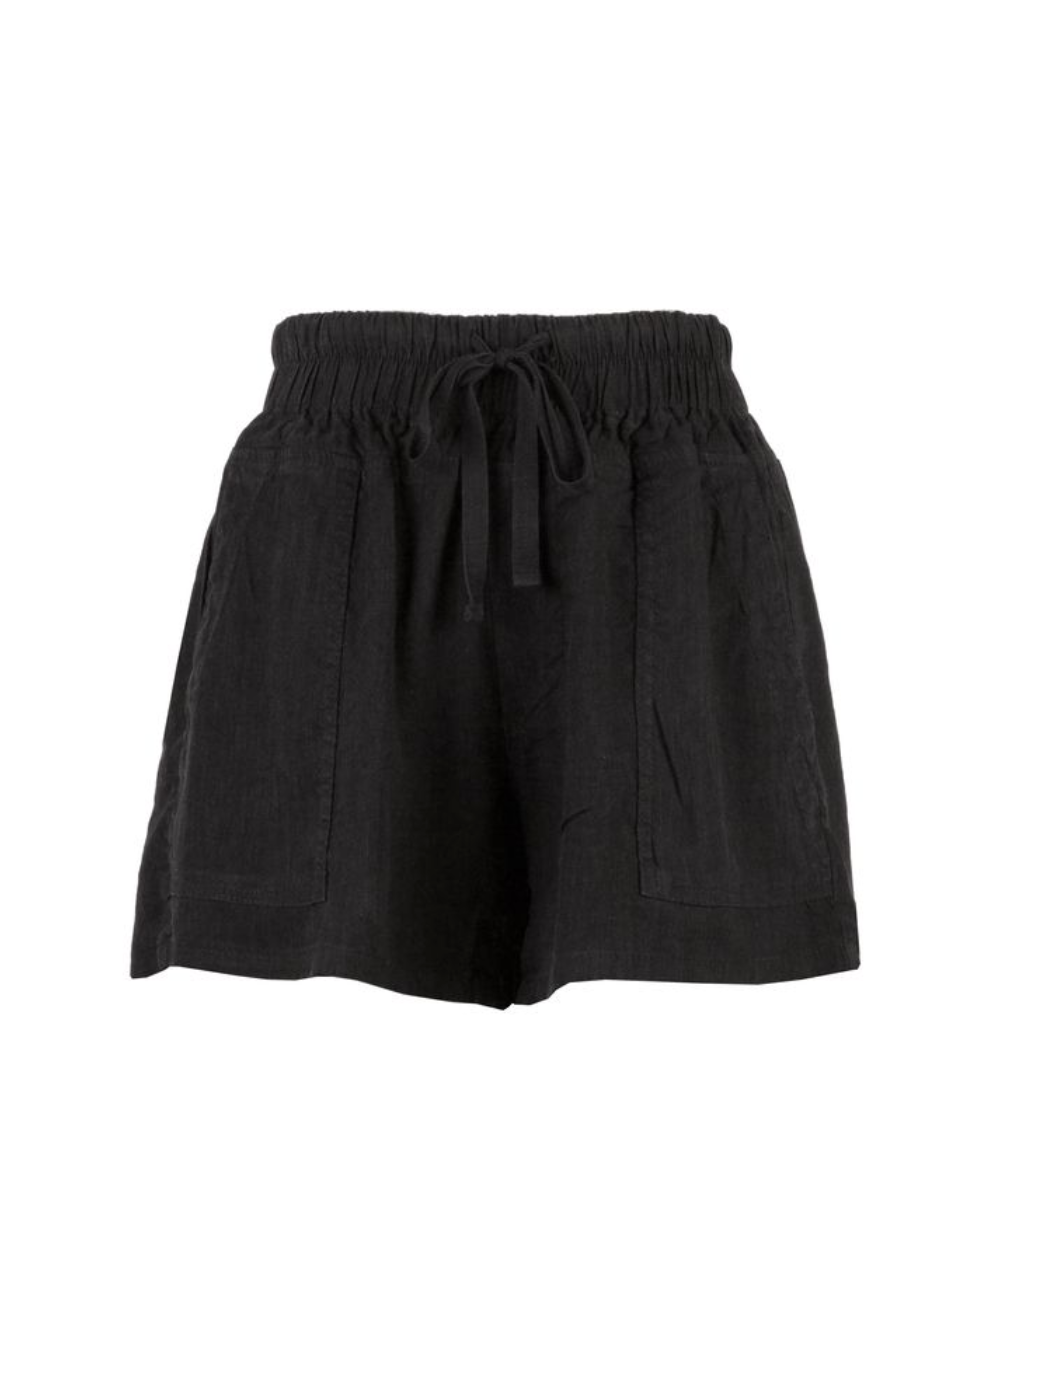 Kut from the Kloth- Smocked Waistband Shorts